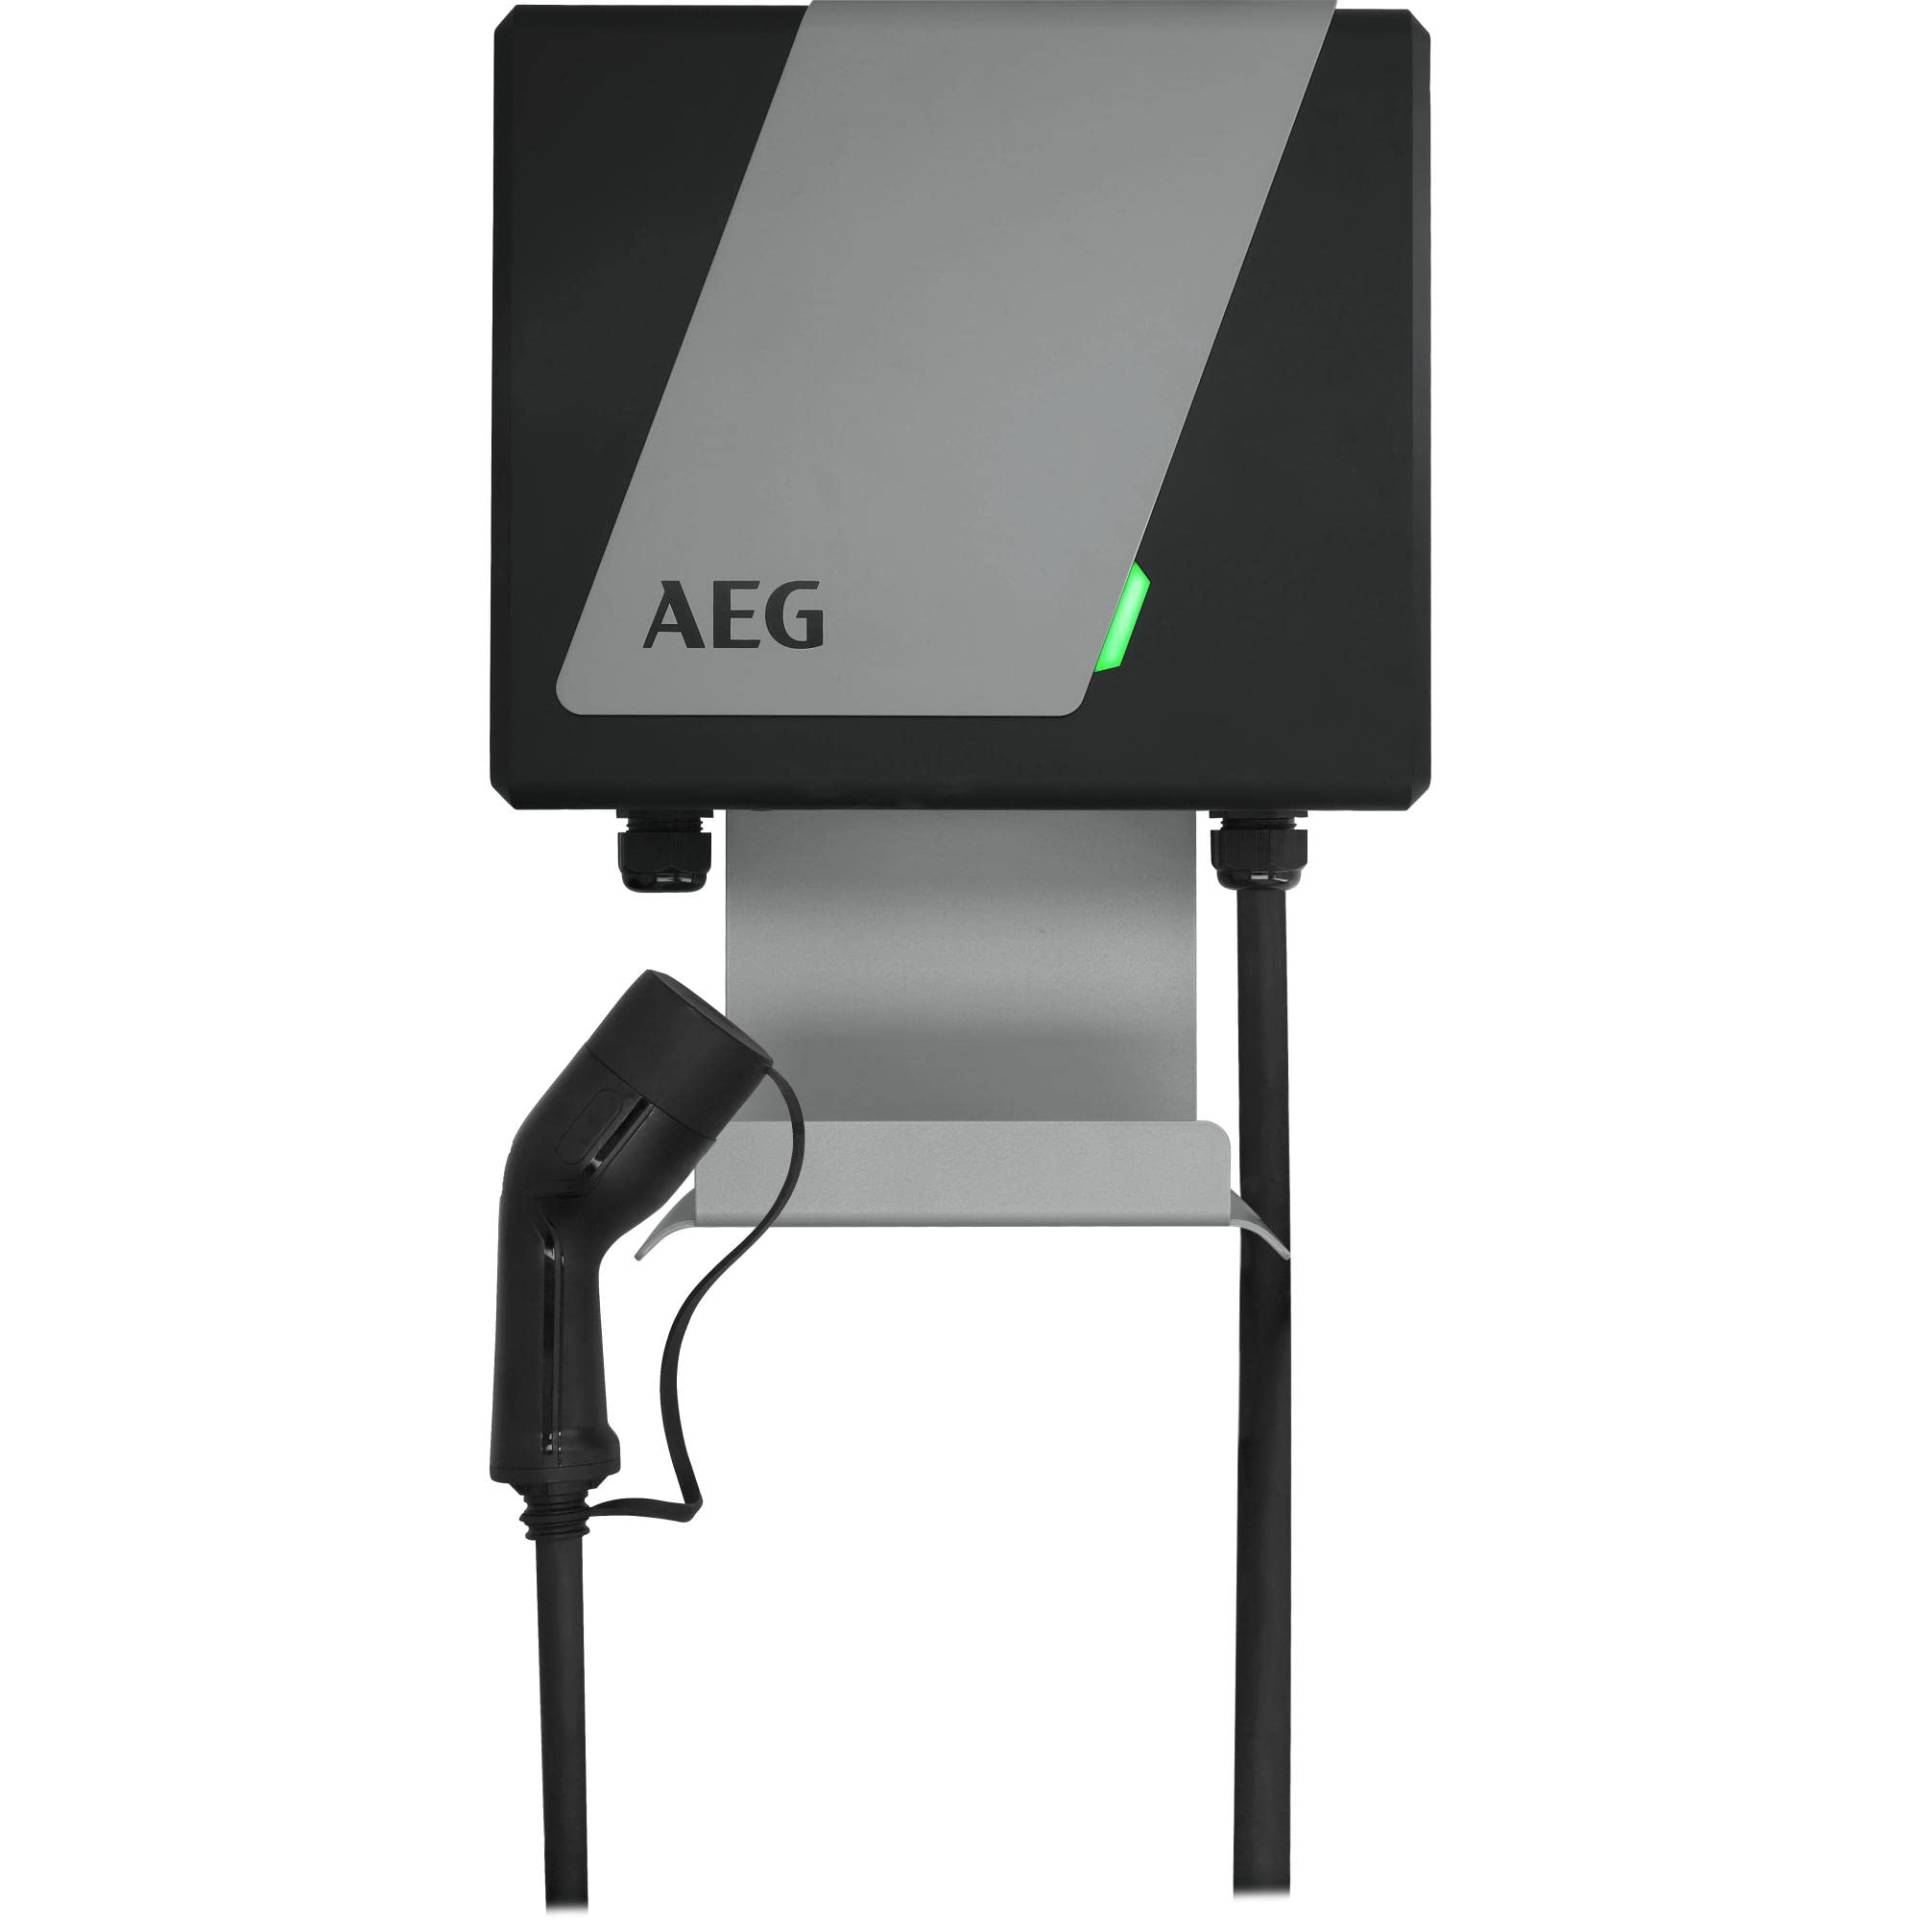 AEG Wallbox WB 11, Ladestation für Elektro/Hybrid-Autos, 11 kW 400 V, ohne FI Schalter, 3-phasig, 5m Ladekabel, Typ 2 Stecker, IP 45, LED-Statusanzeige von AEG